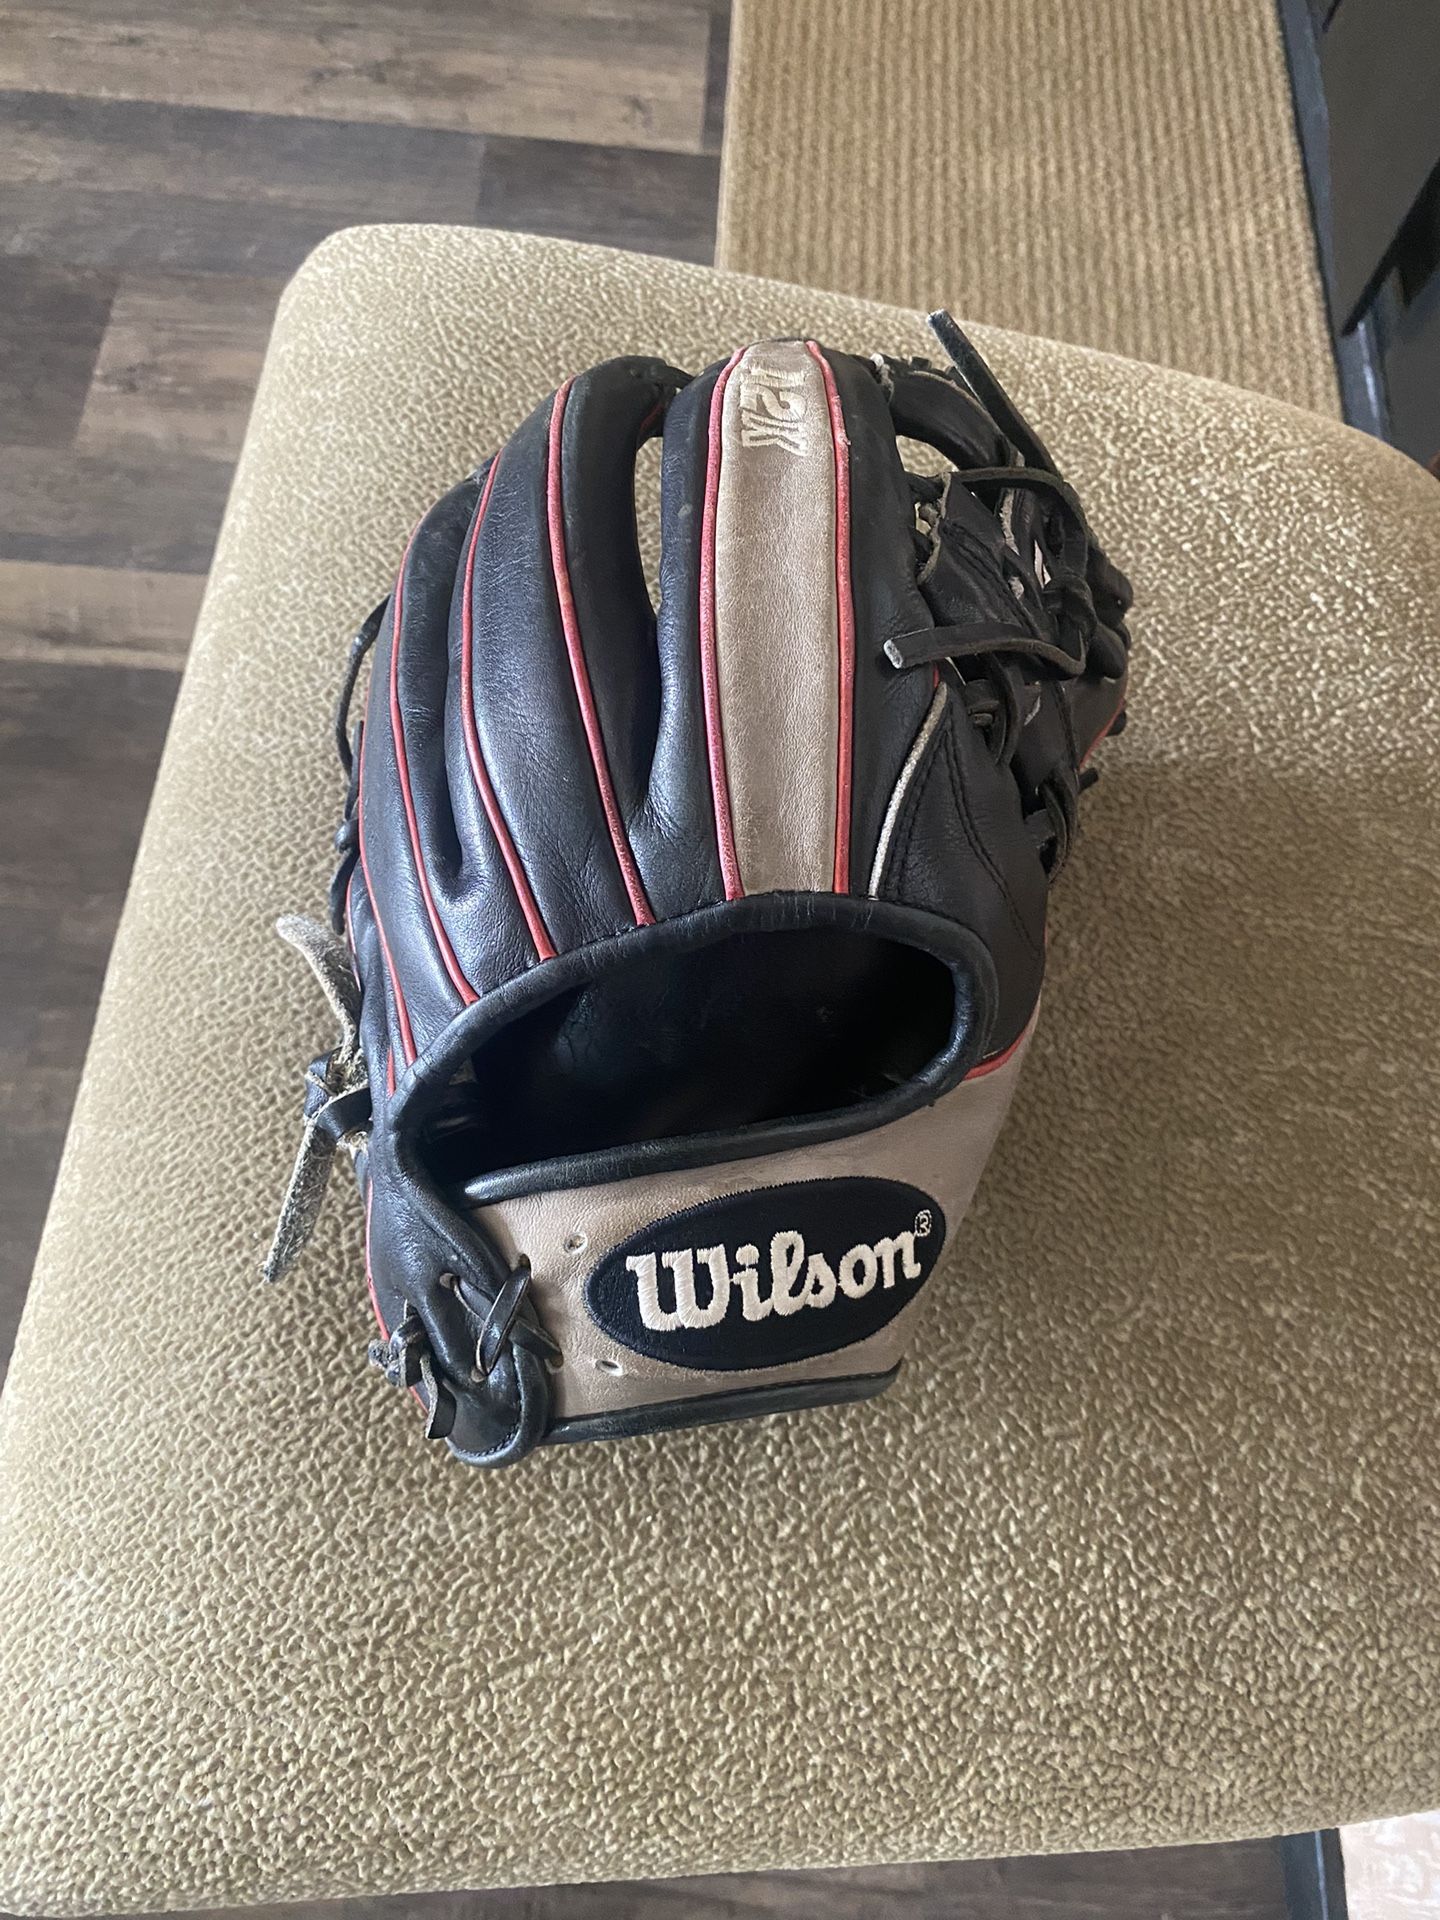 A2K Baseball Glove